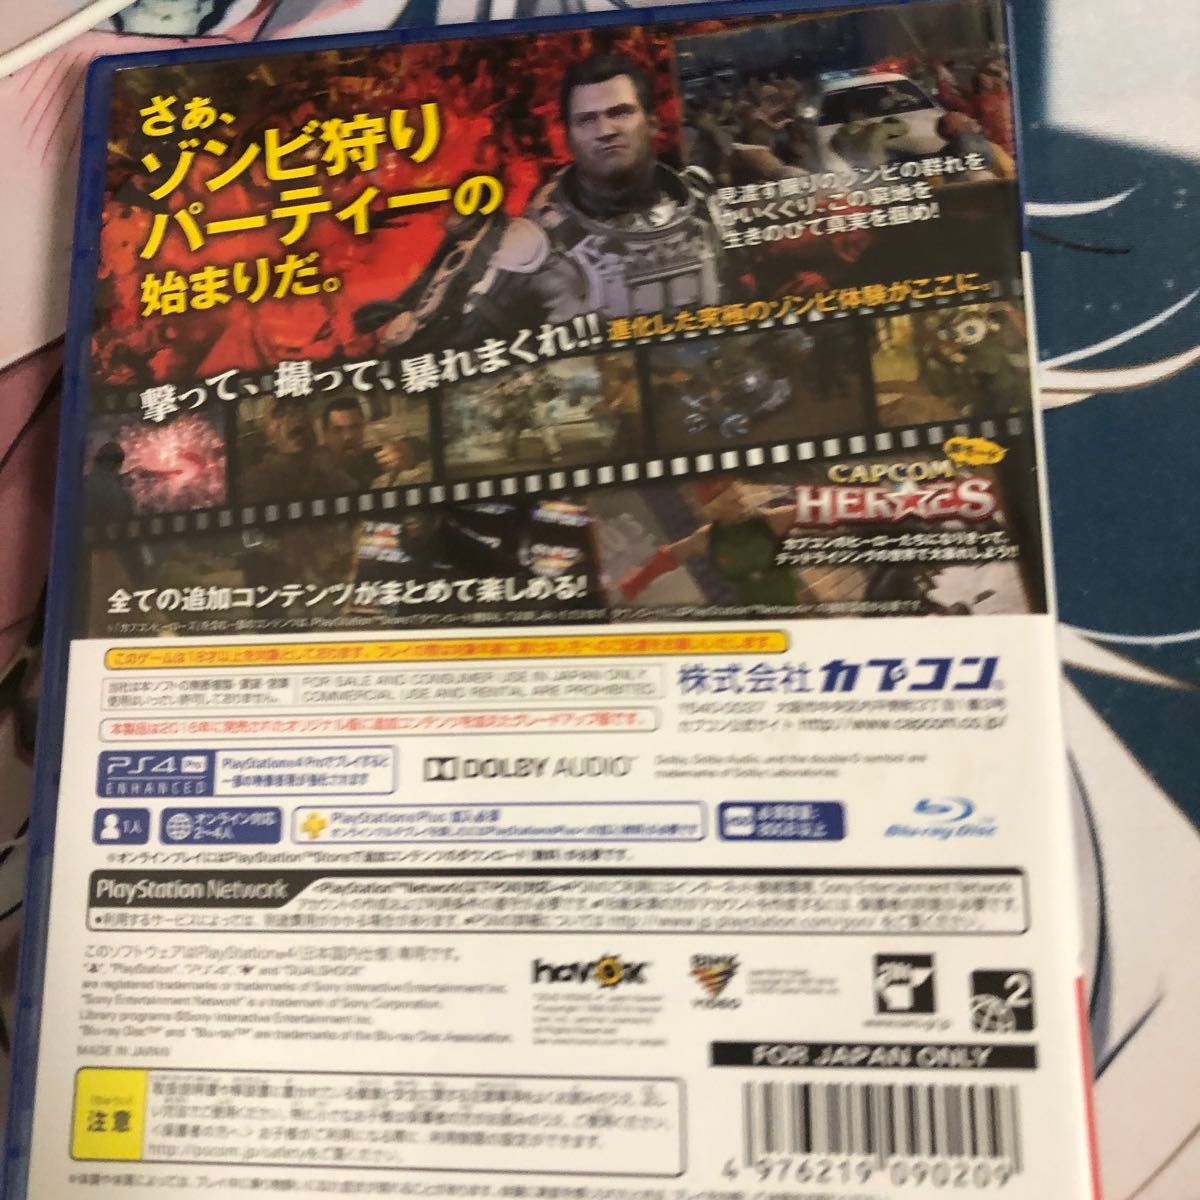 【PS4】デッドライジング4 スペシャルエディション